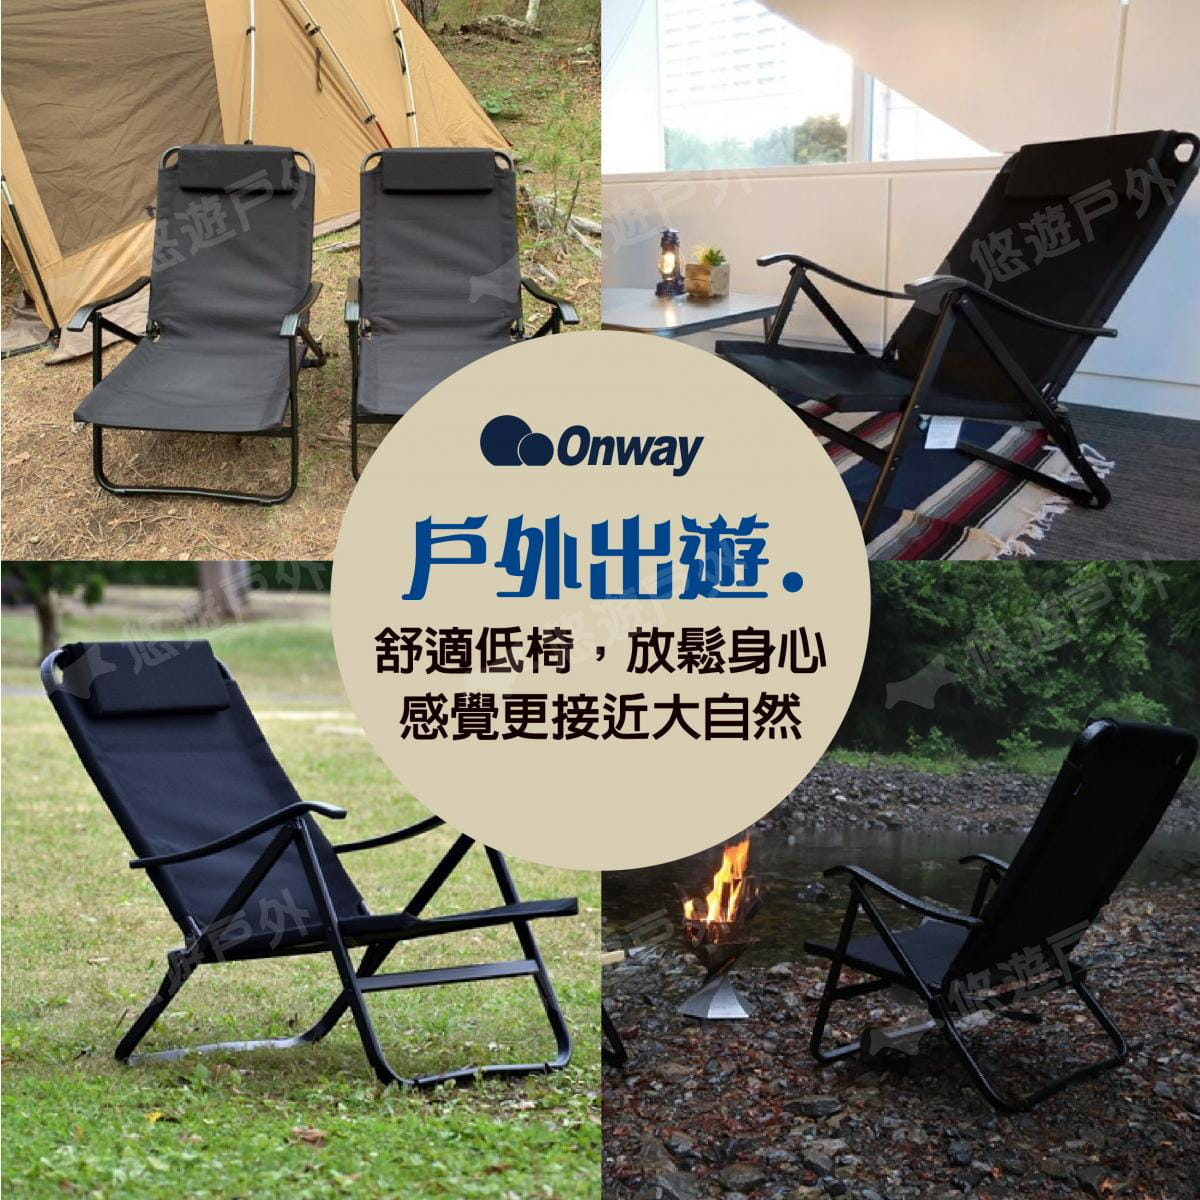 【ONWAY】迷地舒適低黑椅 OW-61-BLK (悠遊戶外) 5